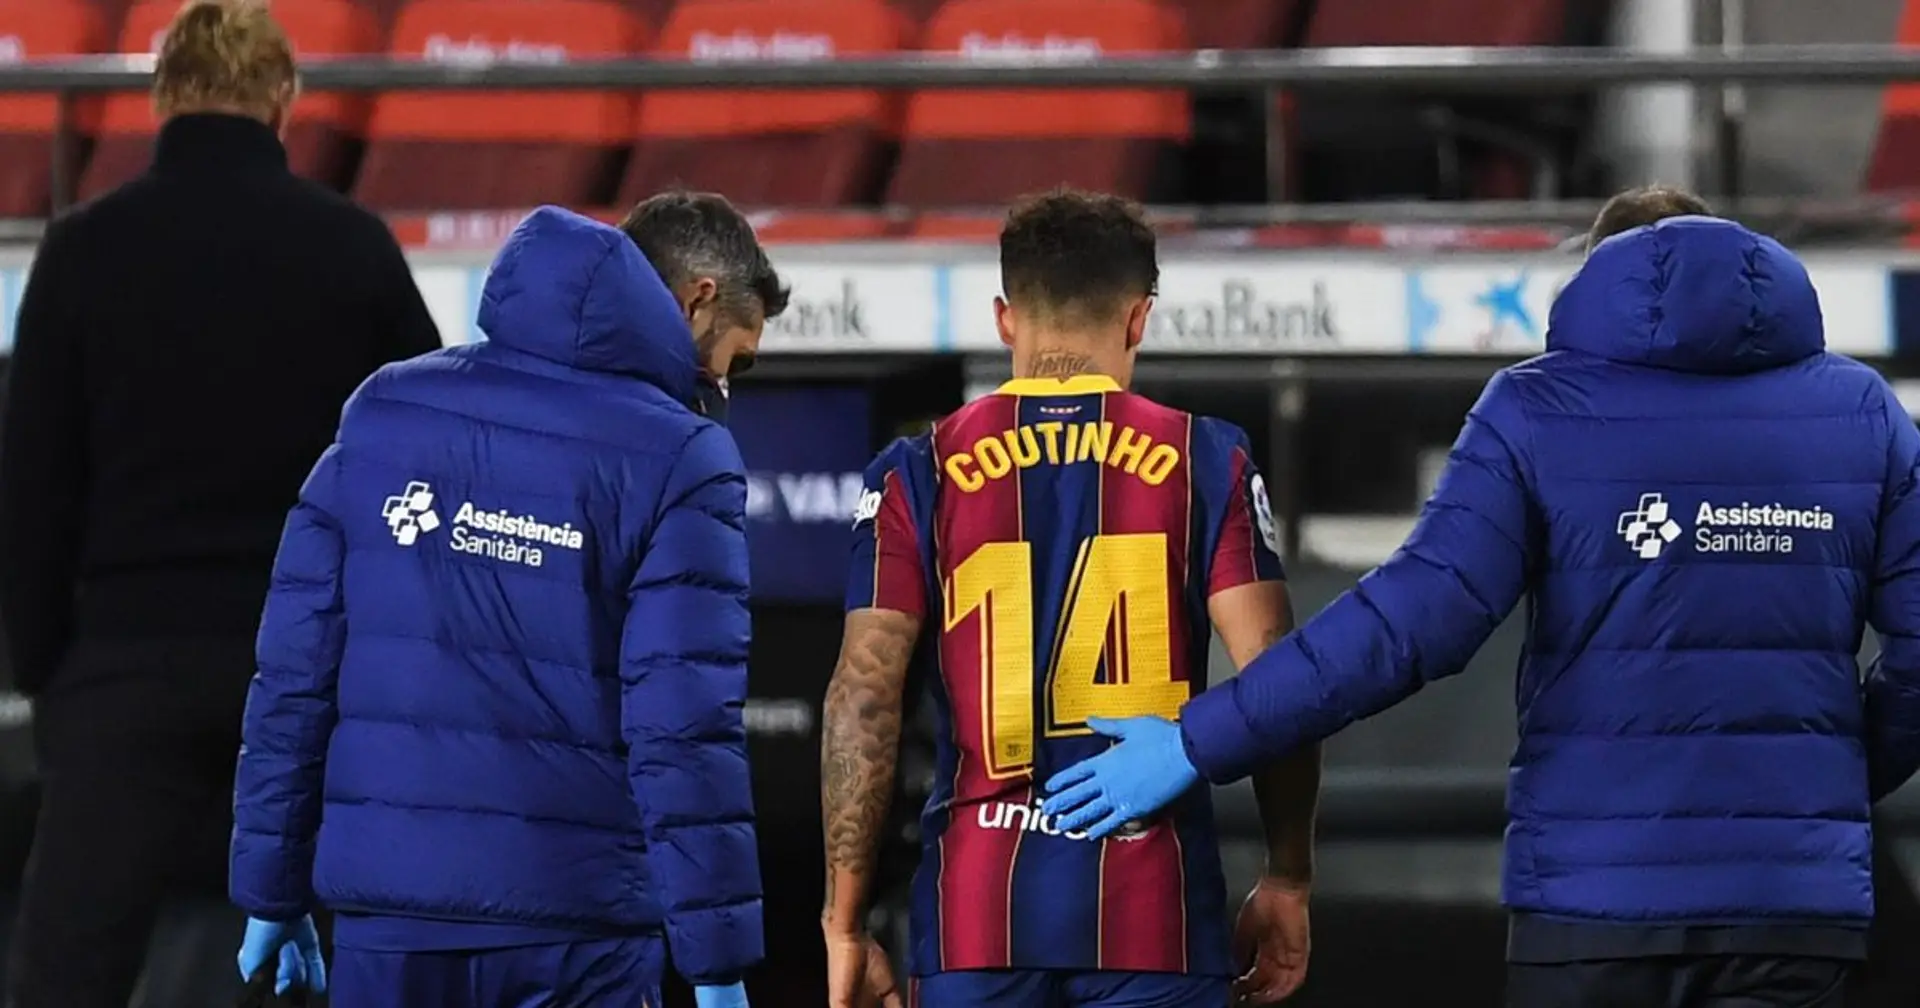 رسميا.. برشلونة يؤكد خضوع كوتينيو للجراحة بعد إصابته في الركبة